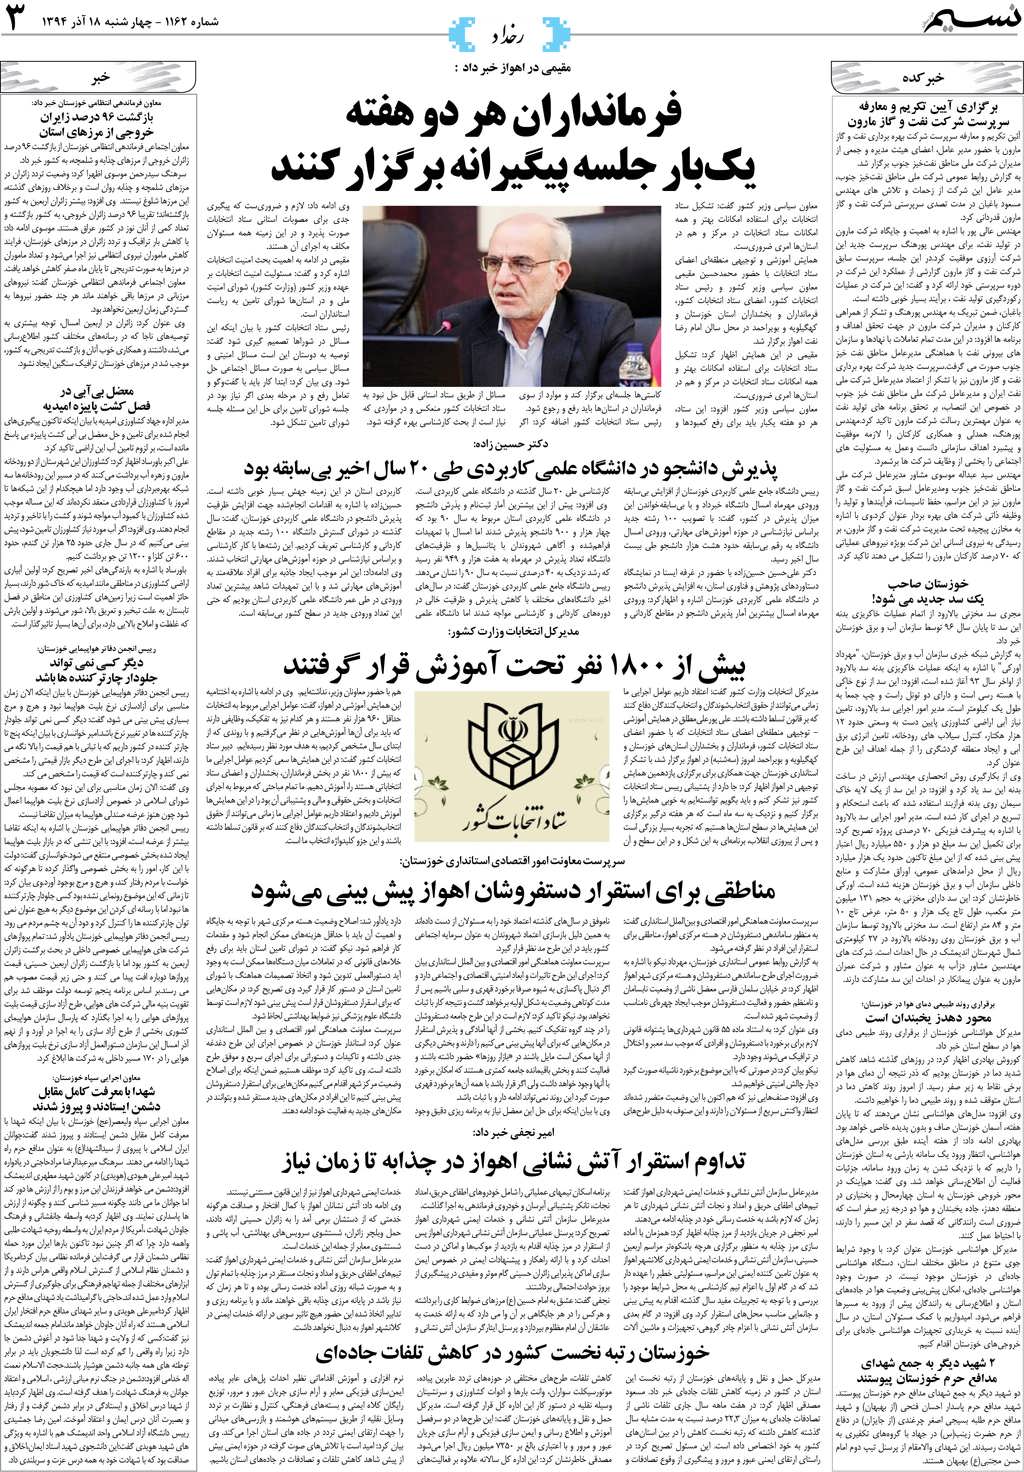 صفحه رخداد روزنامه نسیم شماره 1162